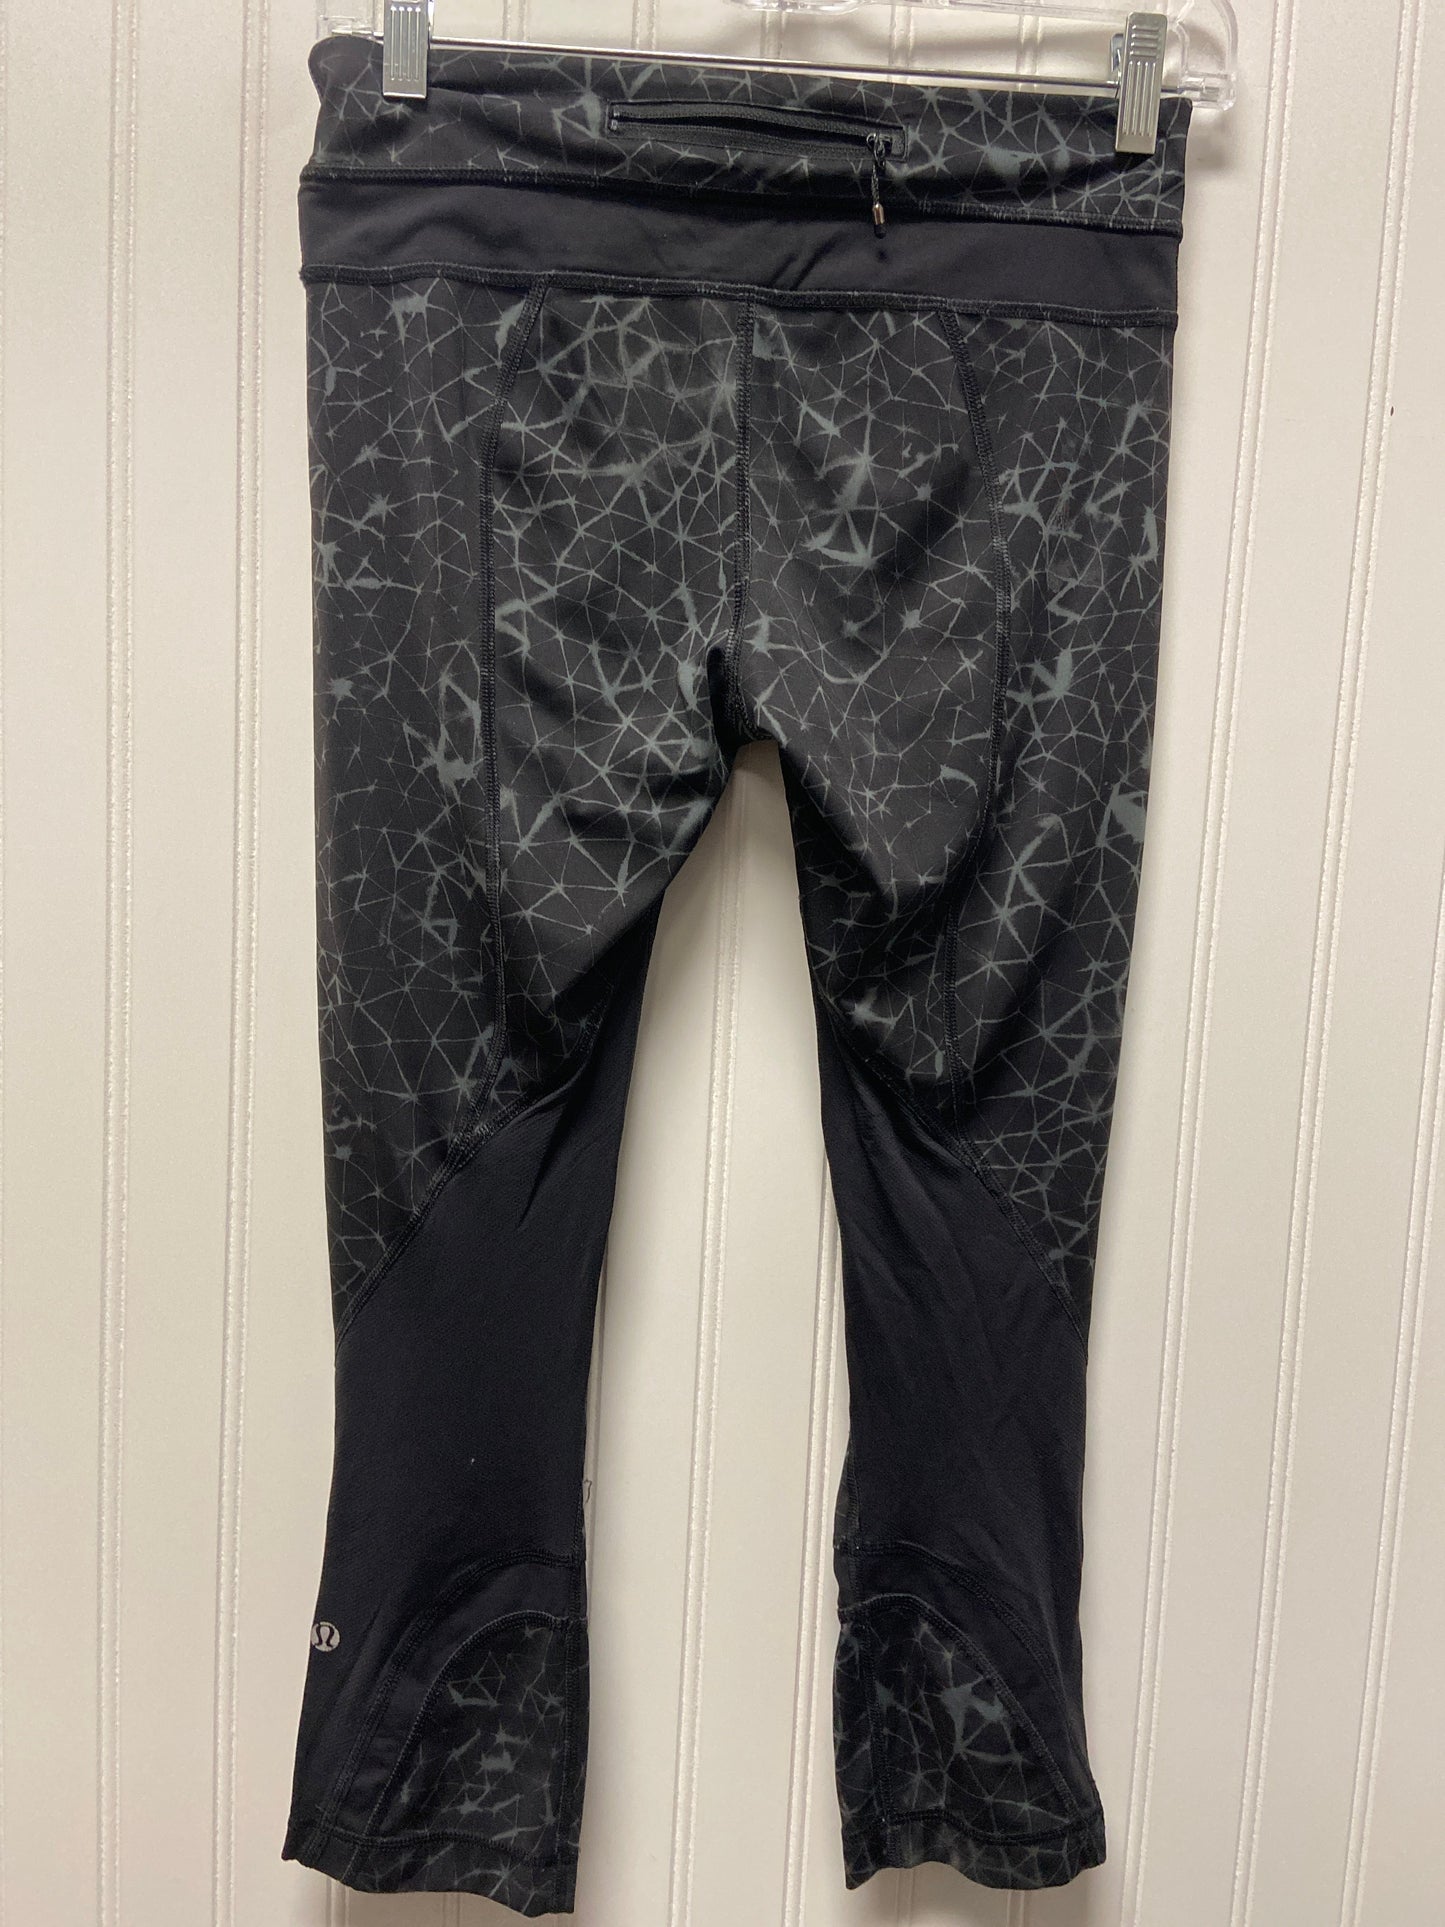 Black & Grey Athletic Leggings Lululemon, Size 6